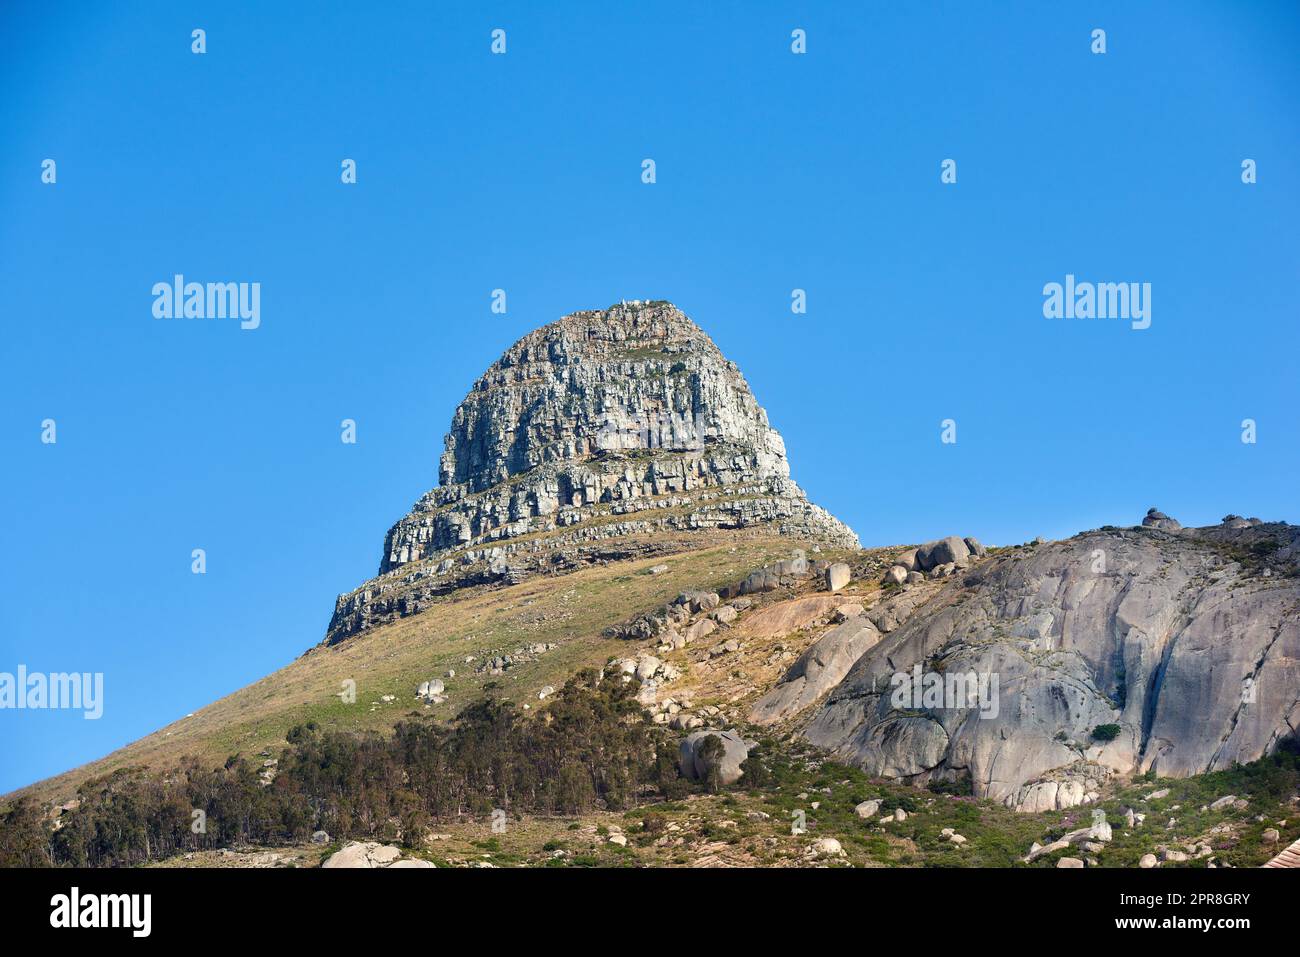 Malerische Landschaft mit blauem Himmel über dem Gipfel des Tafelbergs in Kapstadt von unten mit viel Platz. Wunderschöne Aussicht auf Pflanzen und Bäume rund um eine beliebte Touristenattraktion und ein Naturdenkmal Stockfoto